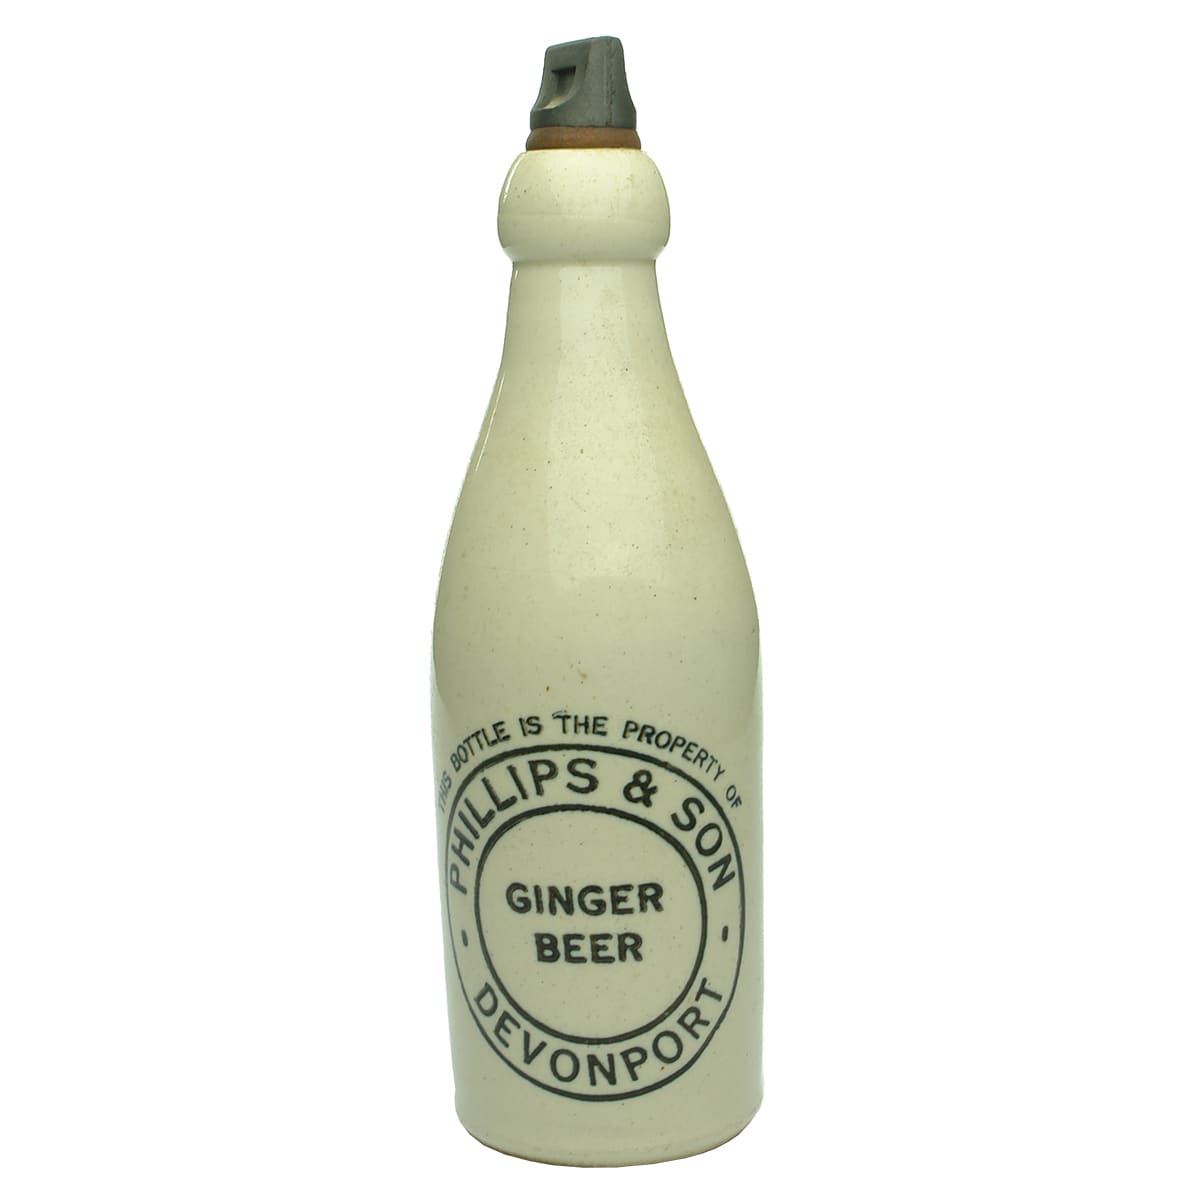 Ginger Beer. Phillips & Son, Devonport. All White. Champagne. Internal Thread. (Tasmania)